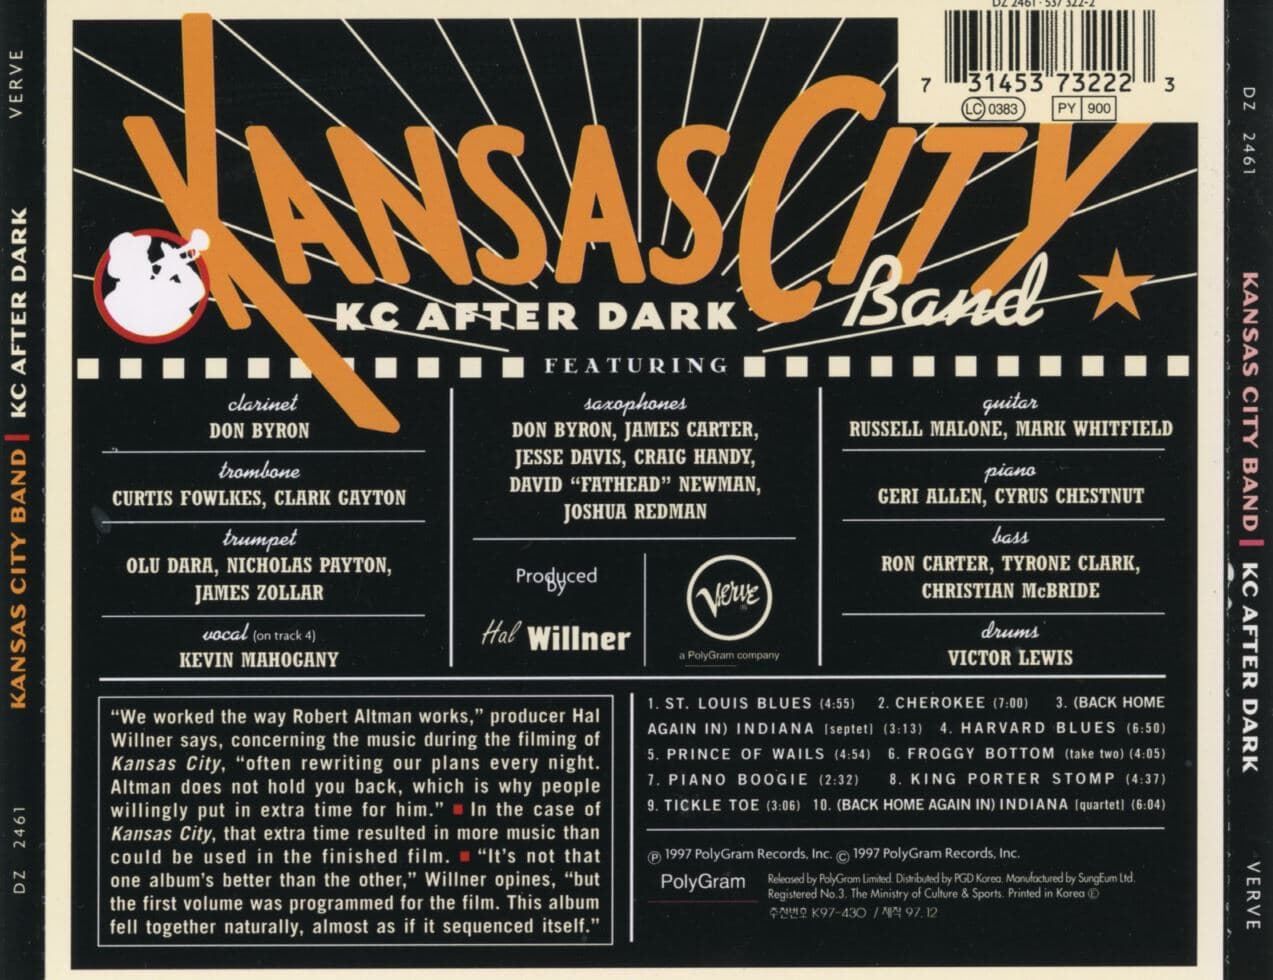 캔사스 시티 밴드 - Kansas City Band - Kc After Dark